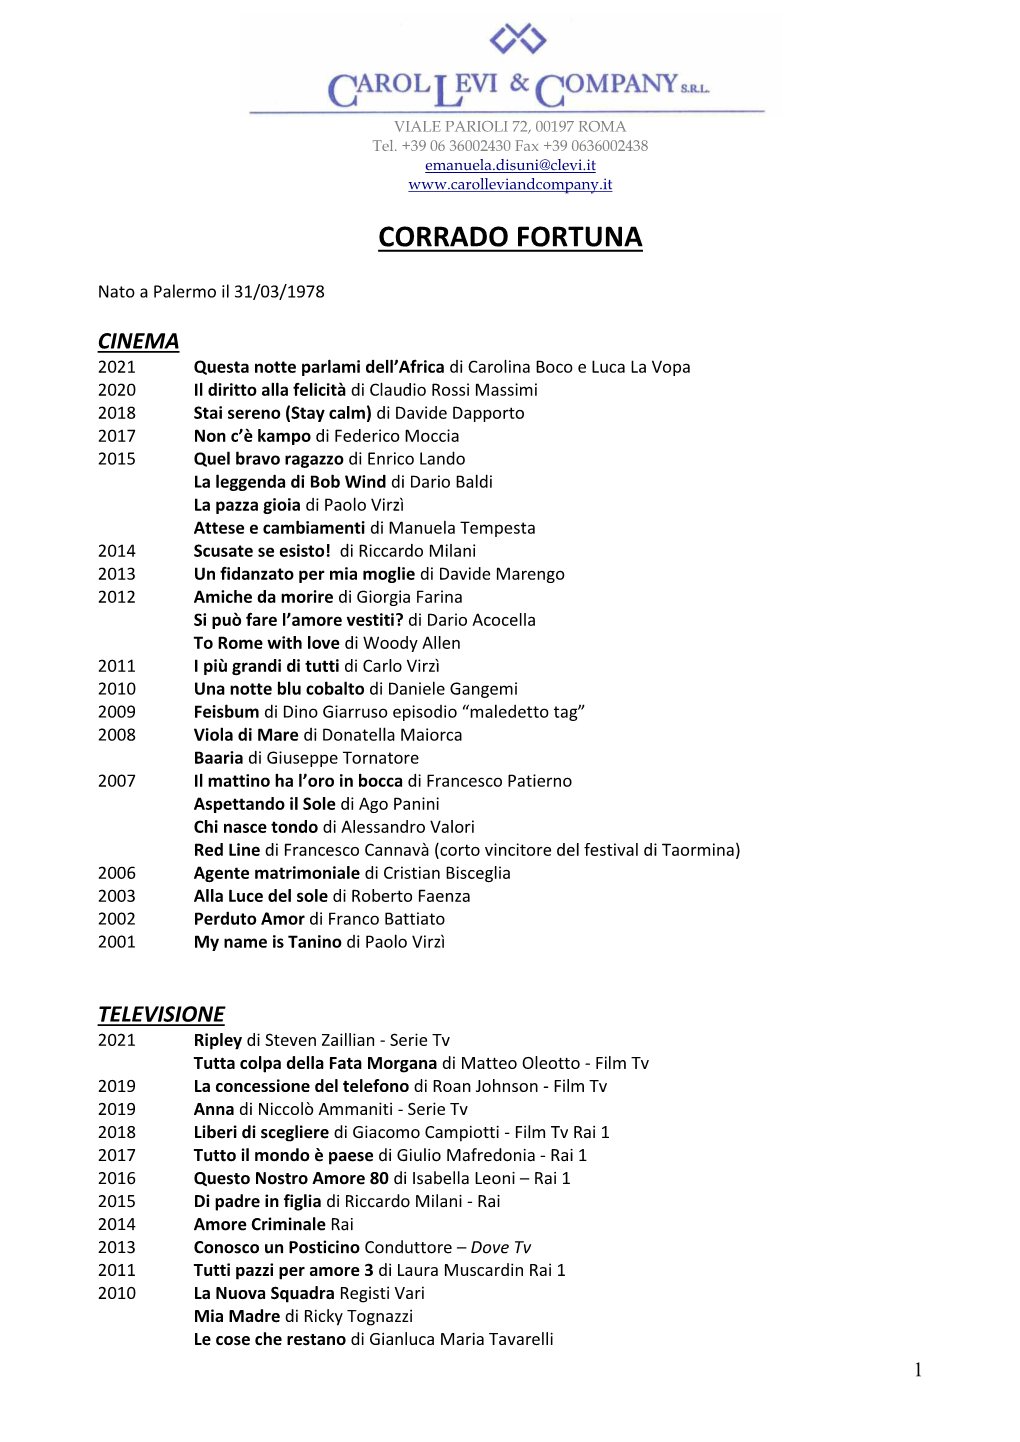 Curriculum Vitae Di Corrado Fortuna